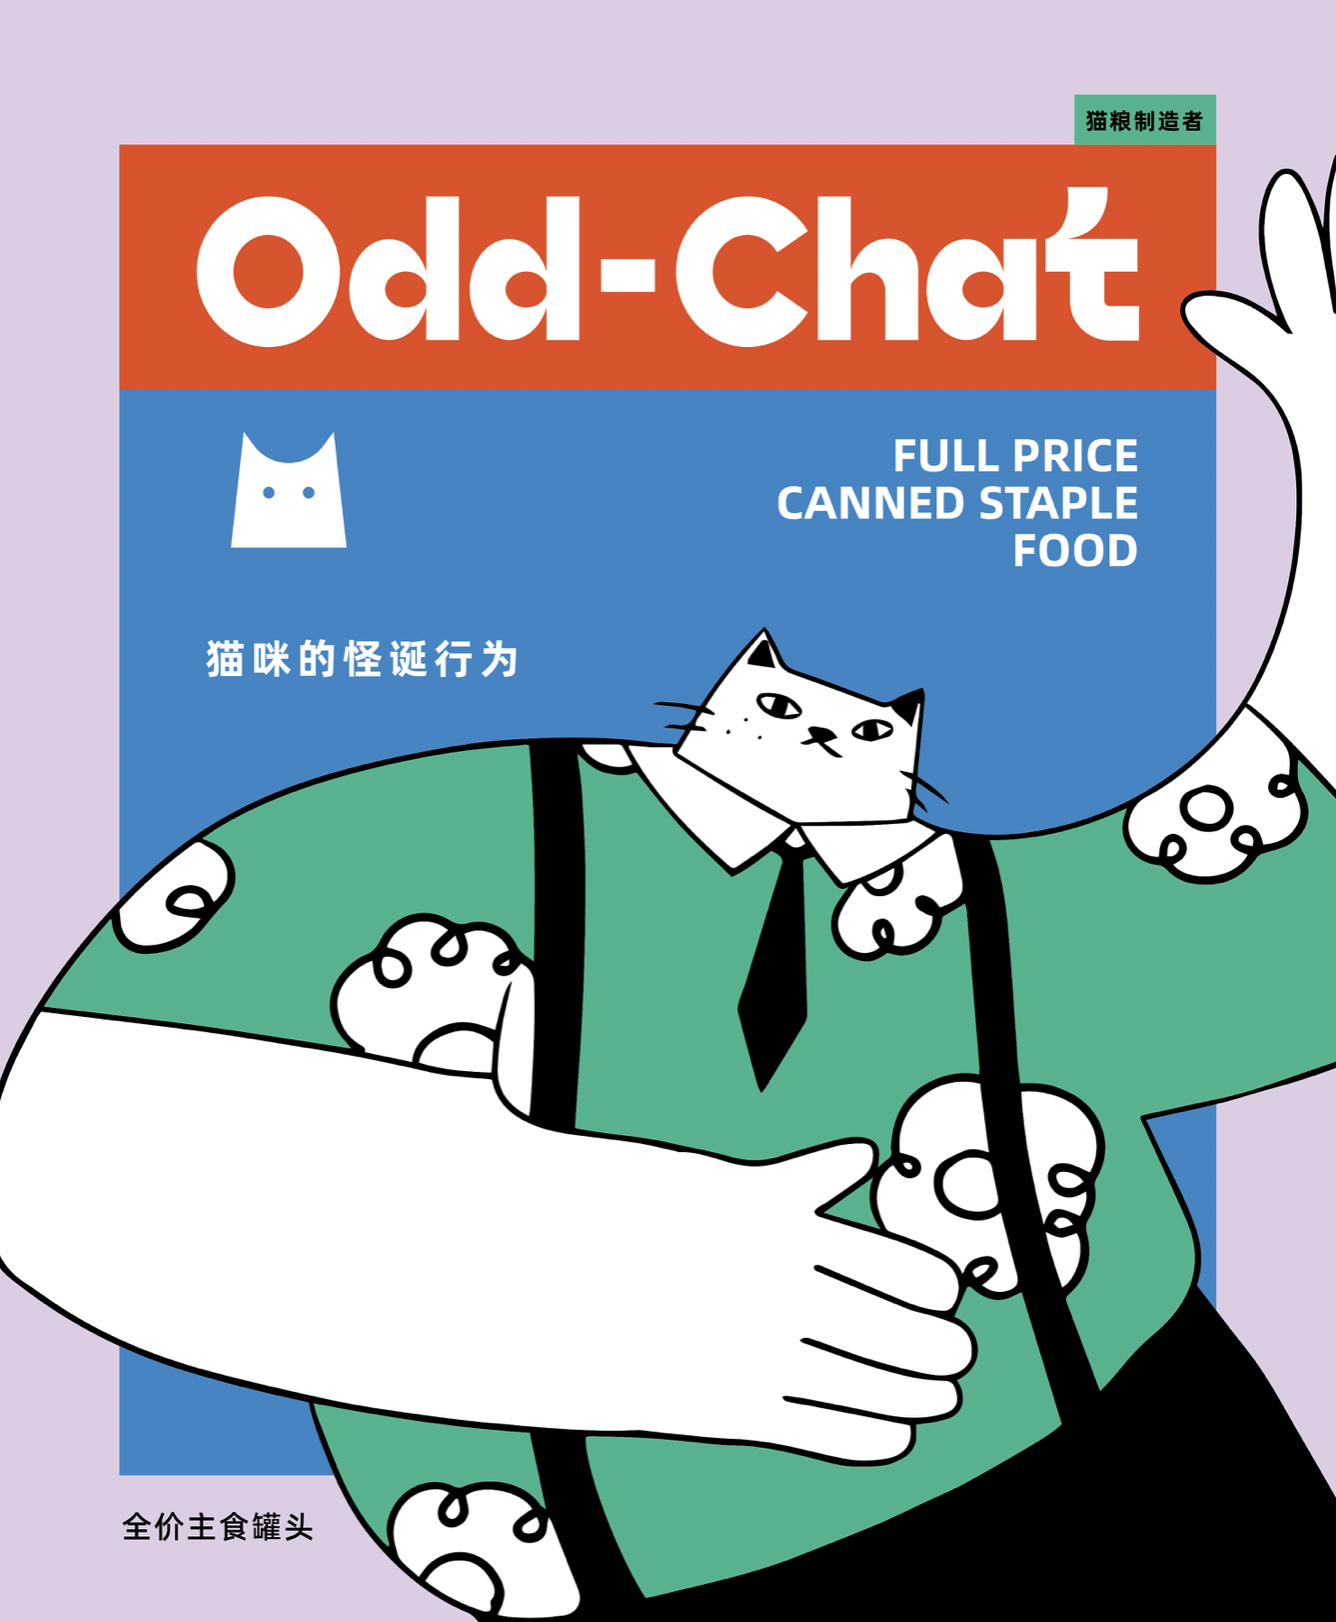 现代人视宠物为家人，猫粮品牌包装如此设计“见怪不怪”